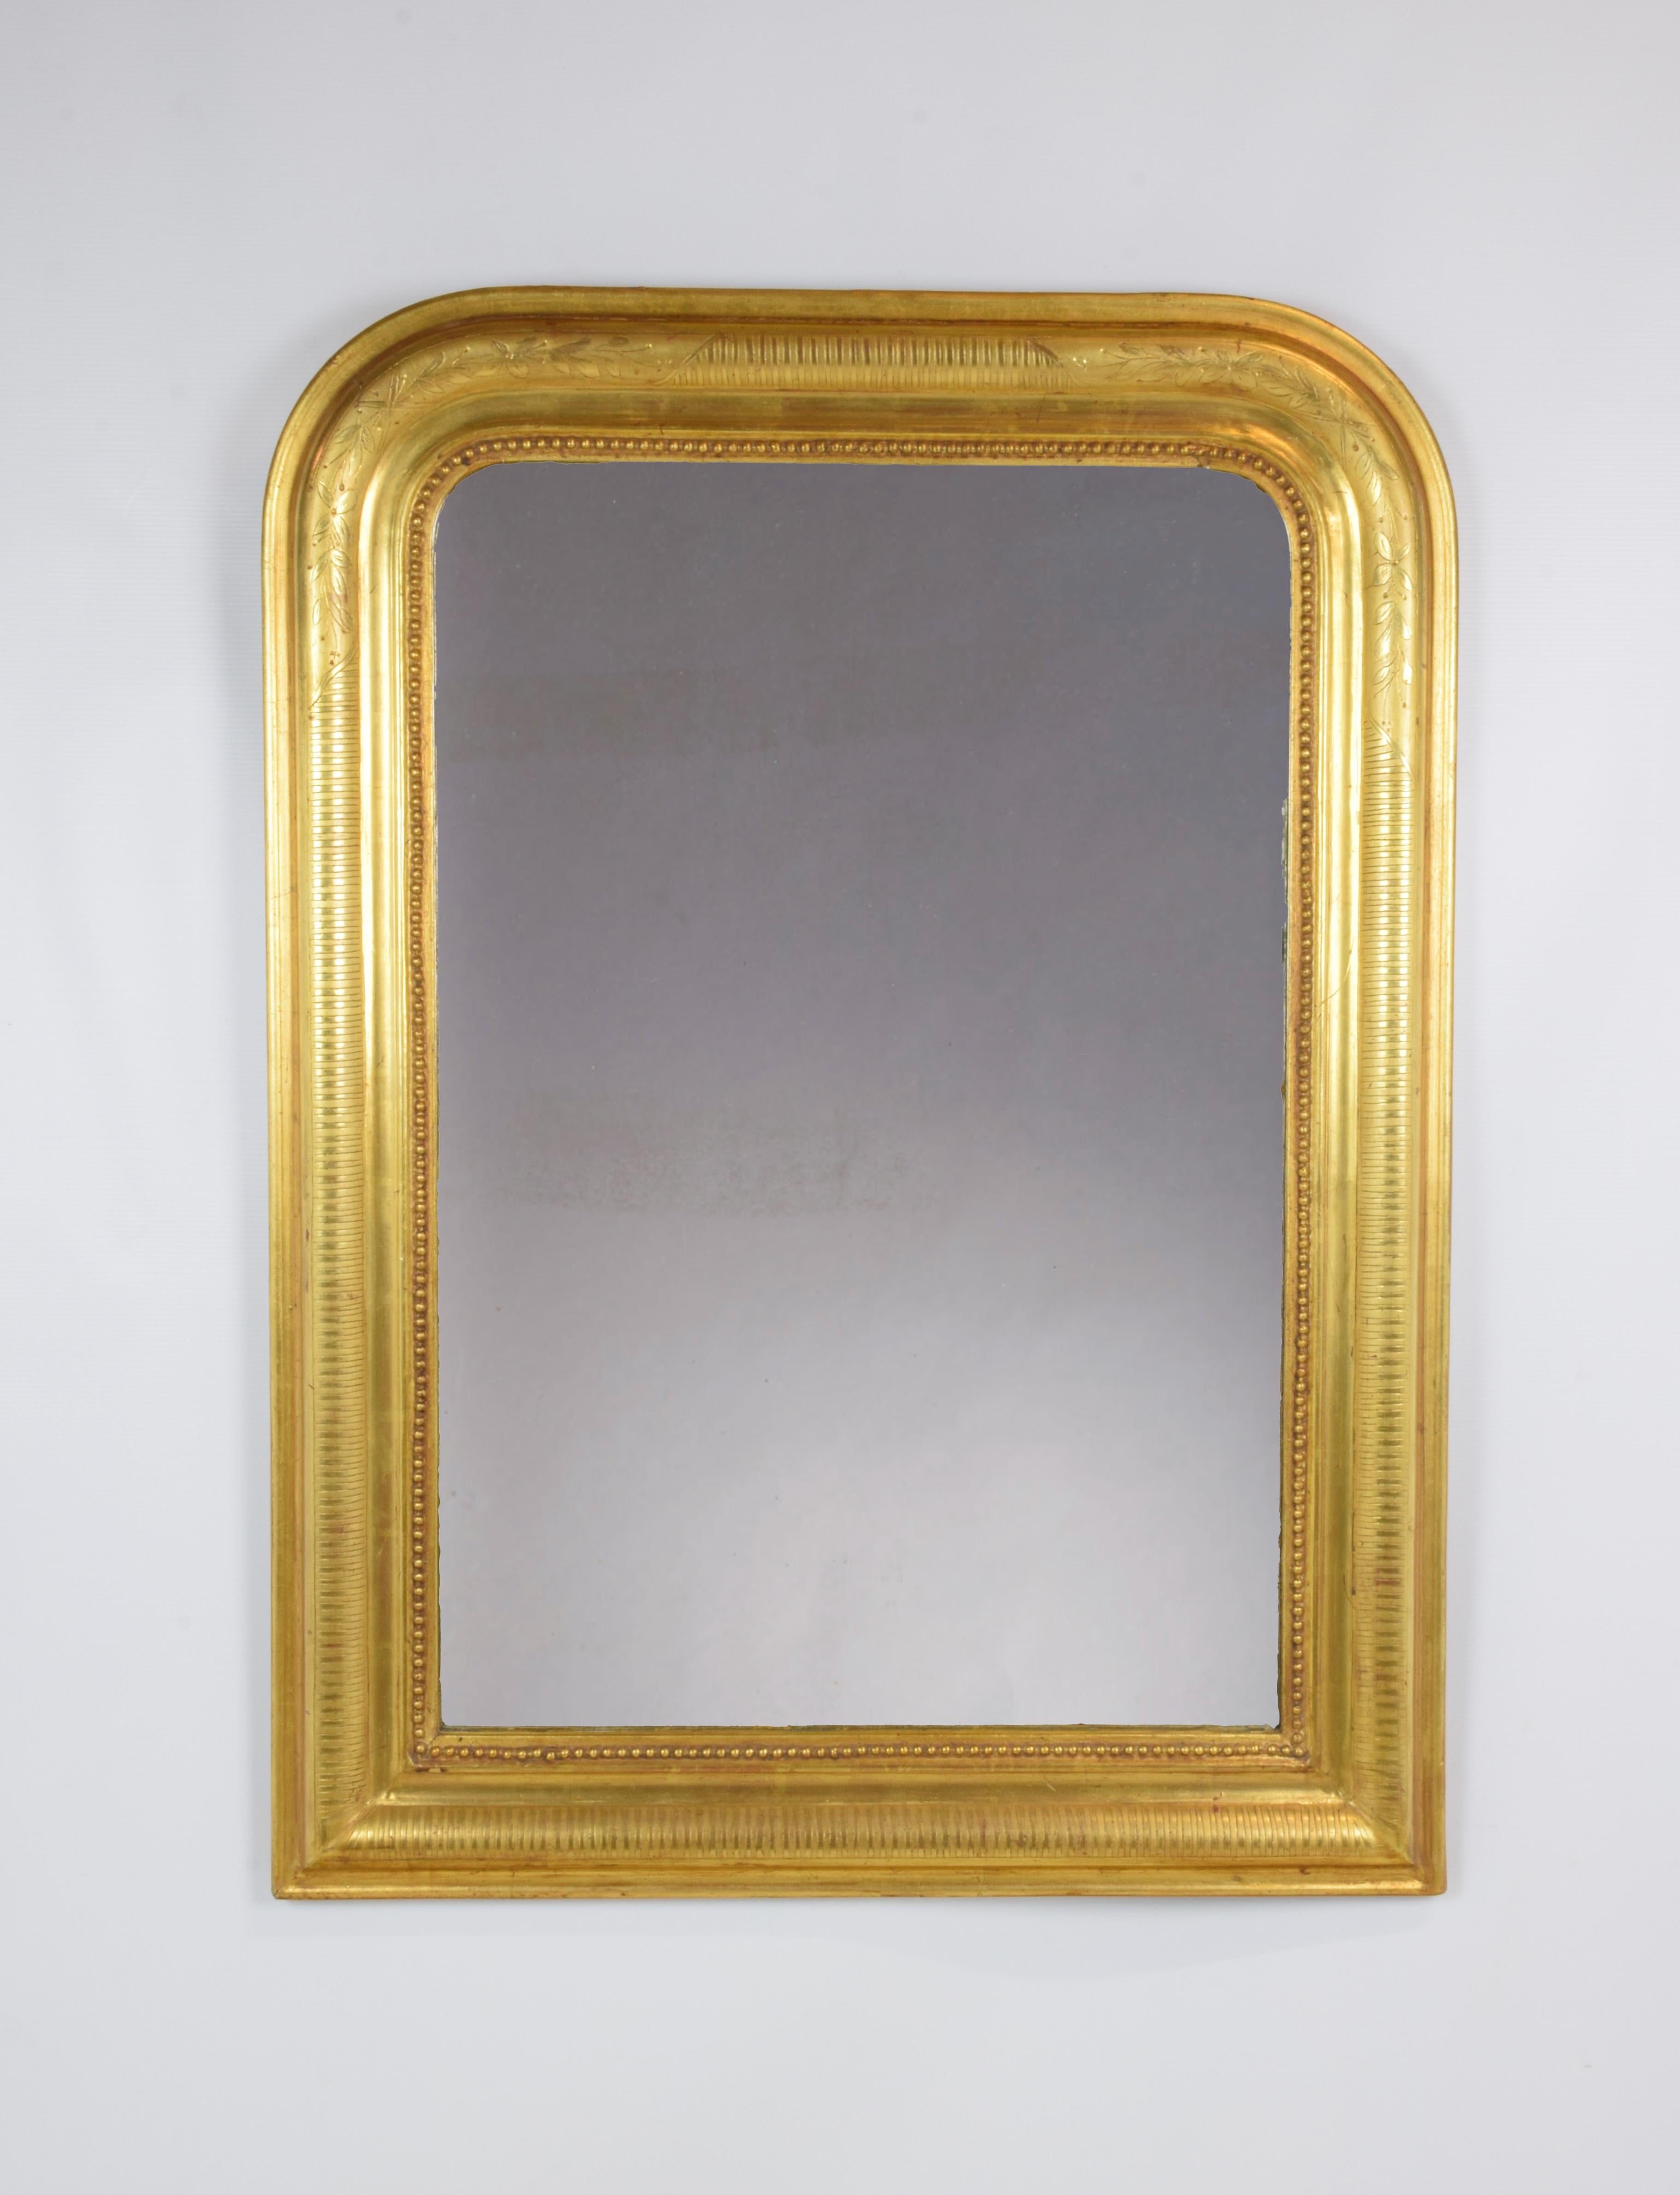 Der antike Spiegel wurde um 1880 in Frankreich hergestellt und hat traditionelle Linien mit abgerundeten Ecken. Der Rahmen ist mit reinem Blattgold auf einem gravierten Motiv aus matten und glänzenden Streifen vergoldet. In die abgerundeten Teile